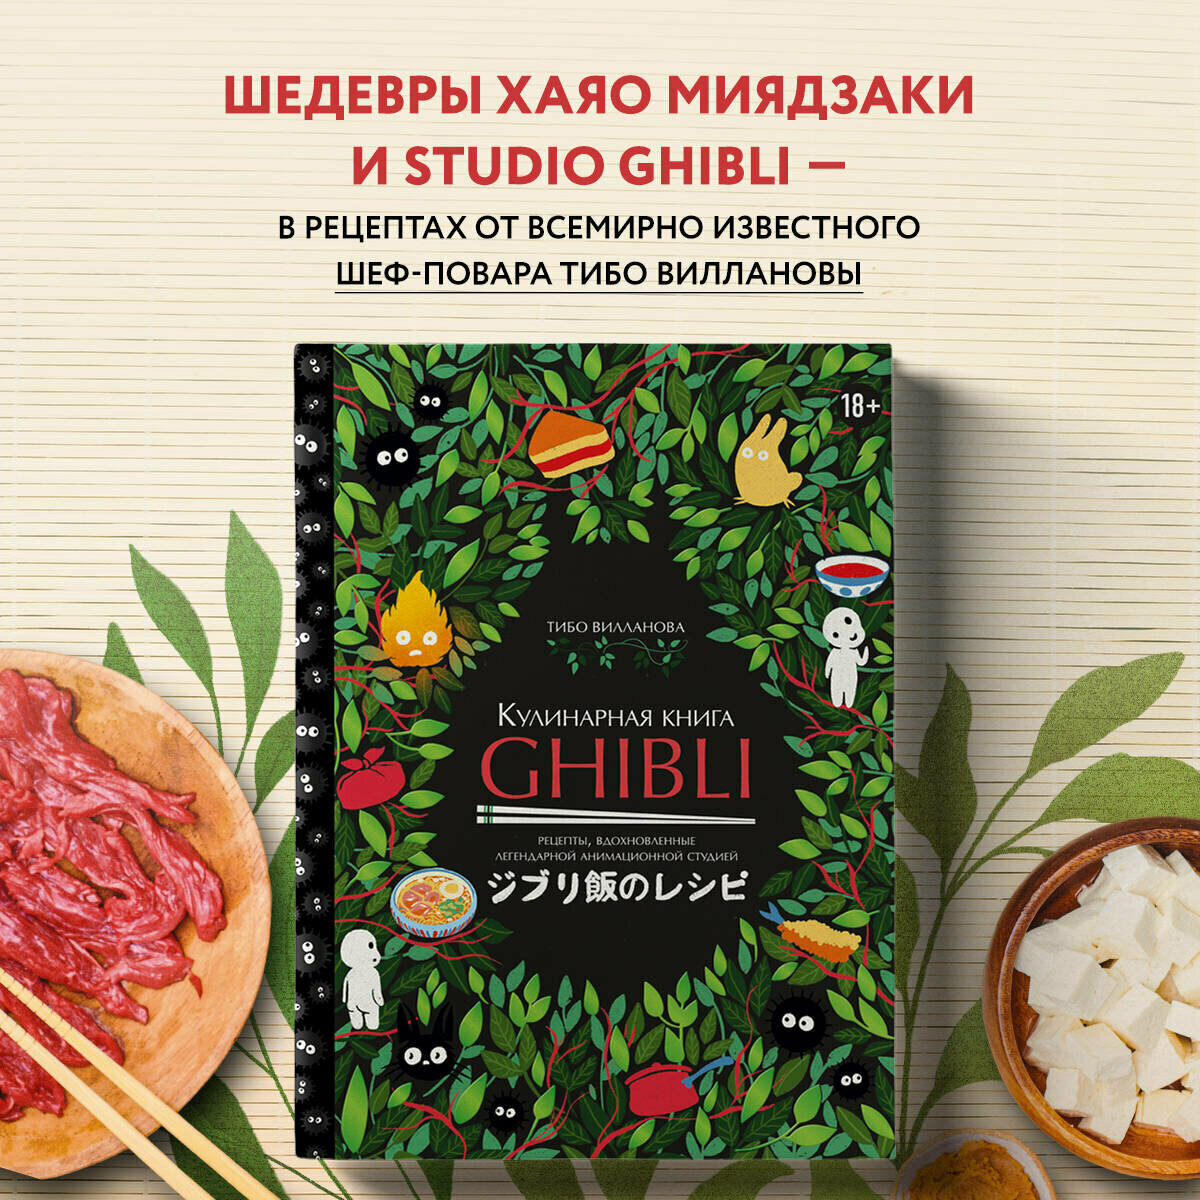 Кулинарная книга Ghibli. Рецепты, вдохновленные легендарной анимационной студией - фото №2